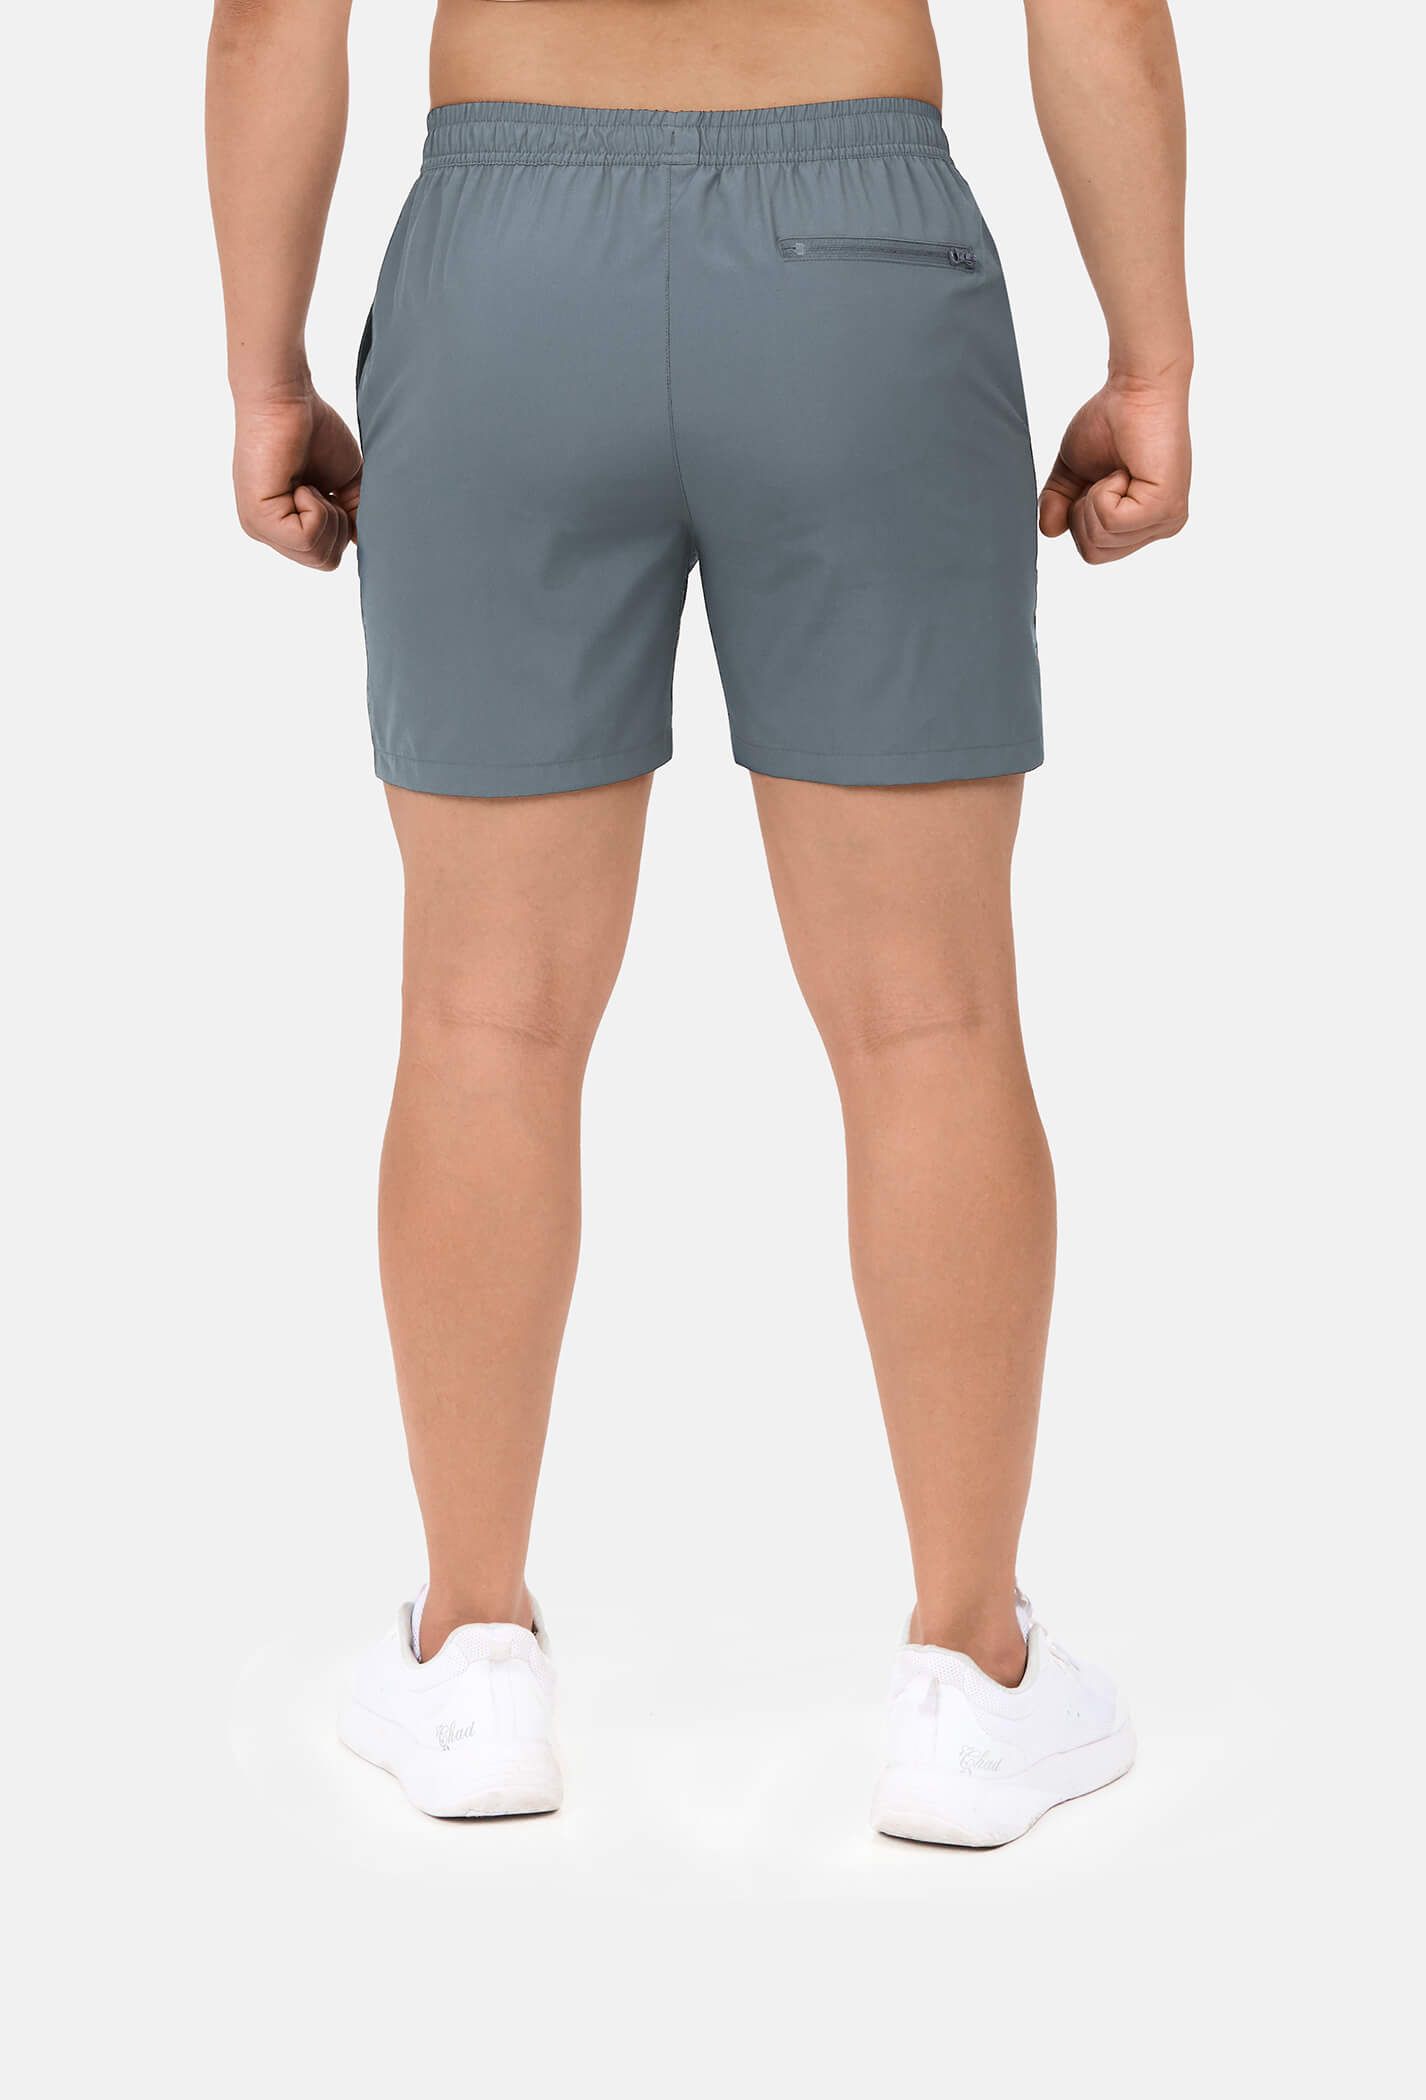 Quần shorts nam thể thao 5" xẻ gấu cao (túi sau có khóa kéo) Xám xanh 3